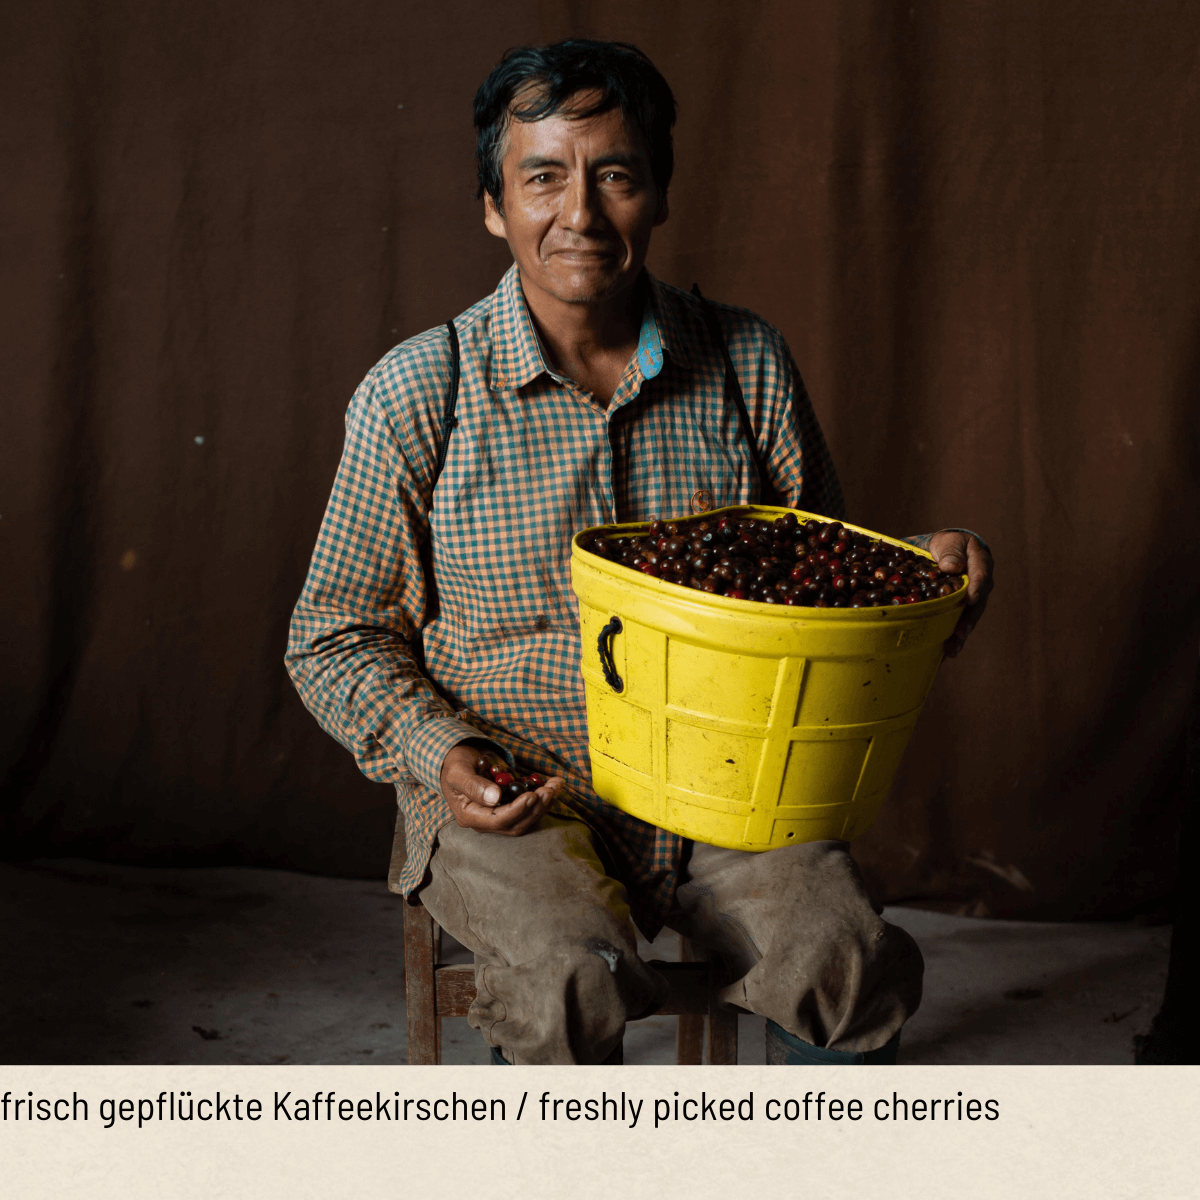 REBELLO Ristretto Organic Fair Trade Coffee Capsules refill bag